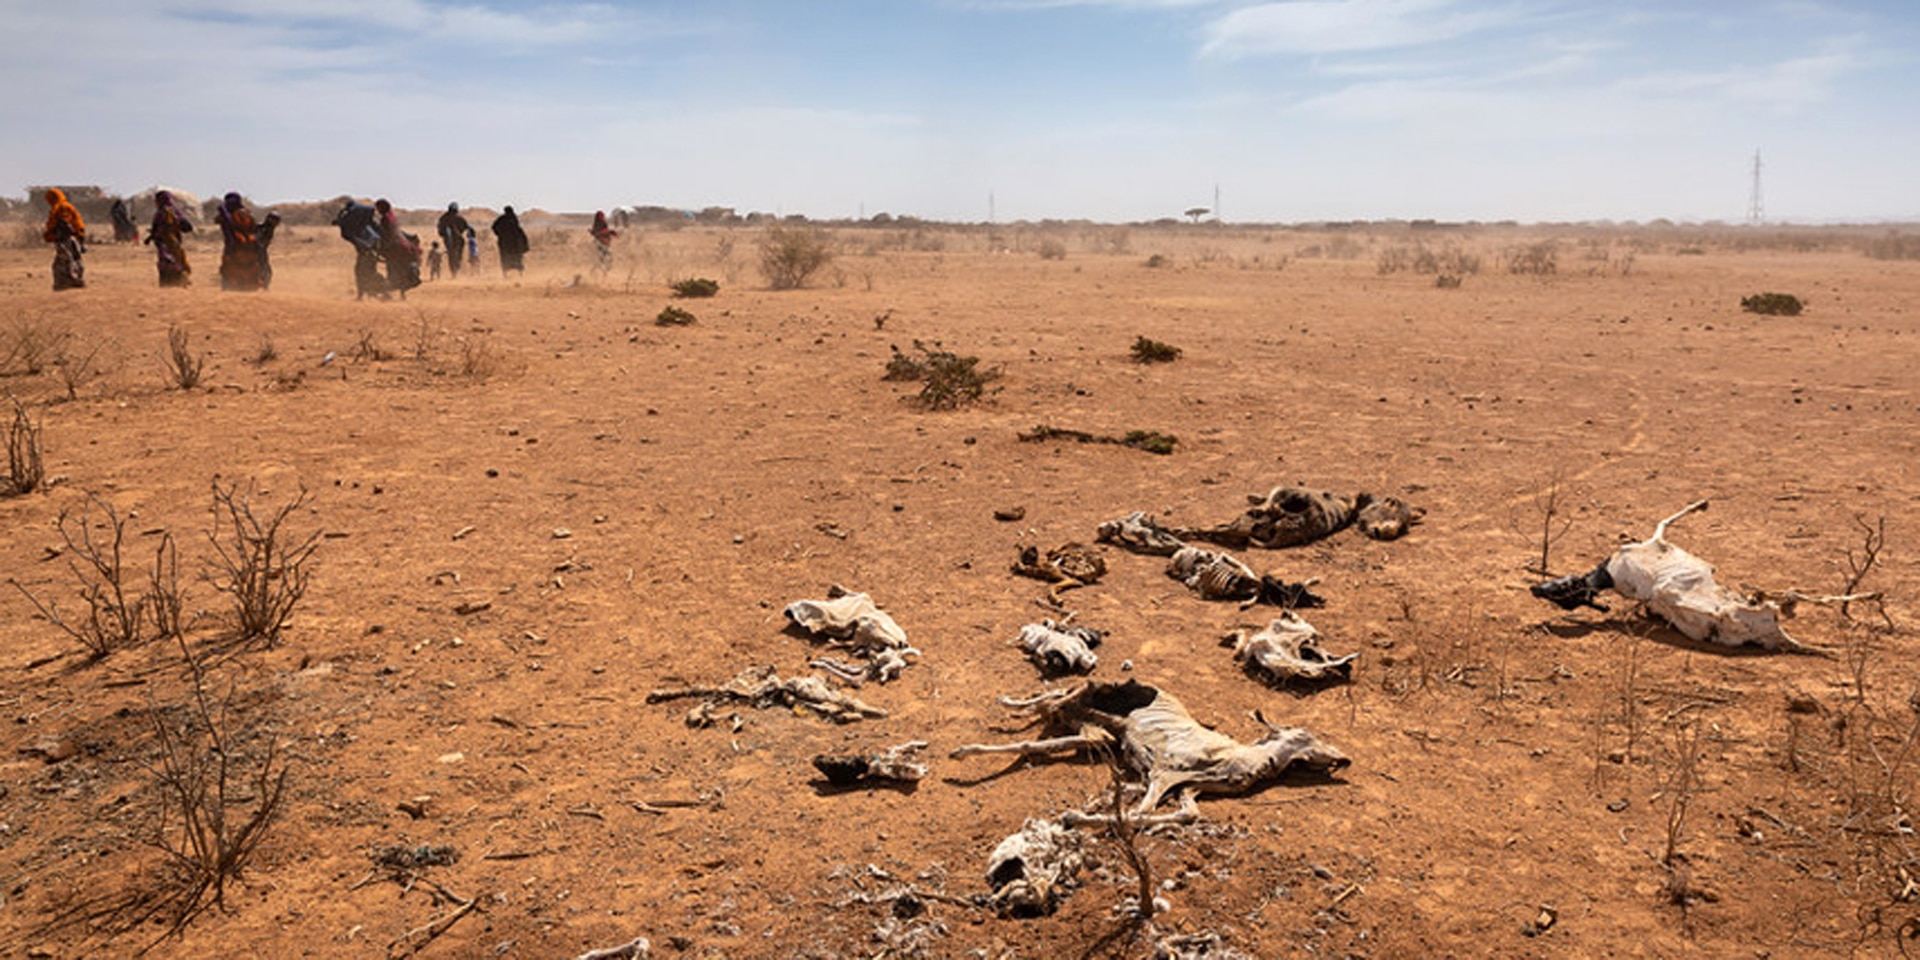 Un groupe de femmes et d’enfants passent devant les carcasses d’animaux sur le sol. La poussière due à la sécheresse envahit le paysage.